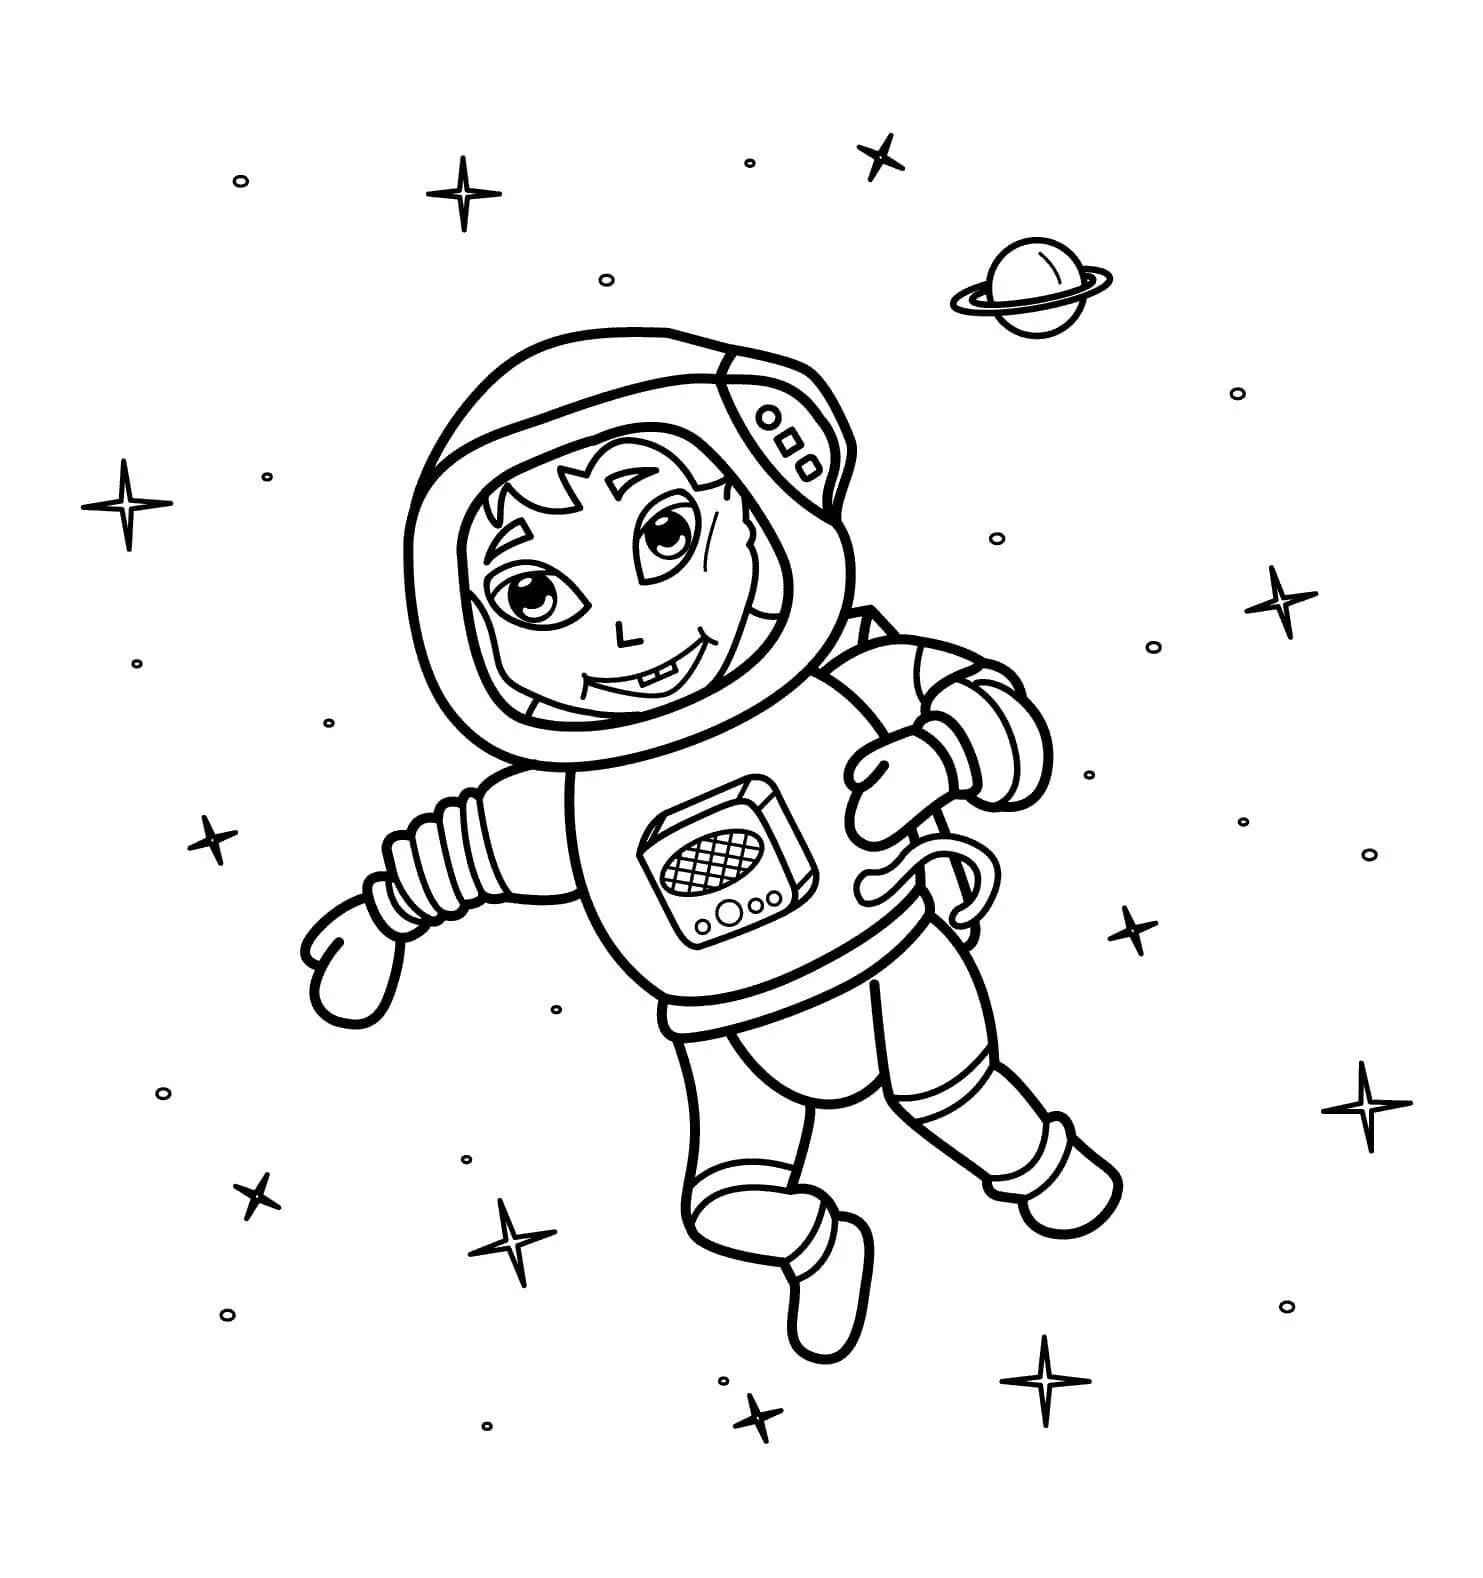 Космонавт шаблон для вырезания распечатать. Космонавт раскраска для детей. Космос раскраска для детей. Раскраска про космос и Космонавтов для детей. Космонавт для раскрашивания для детей.